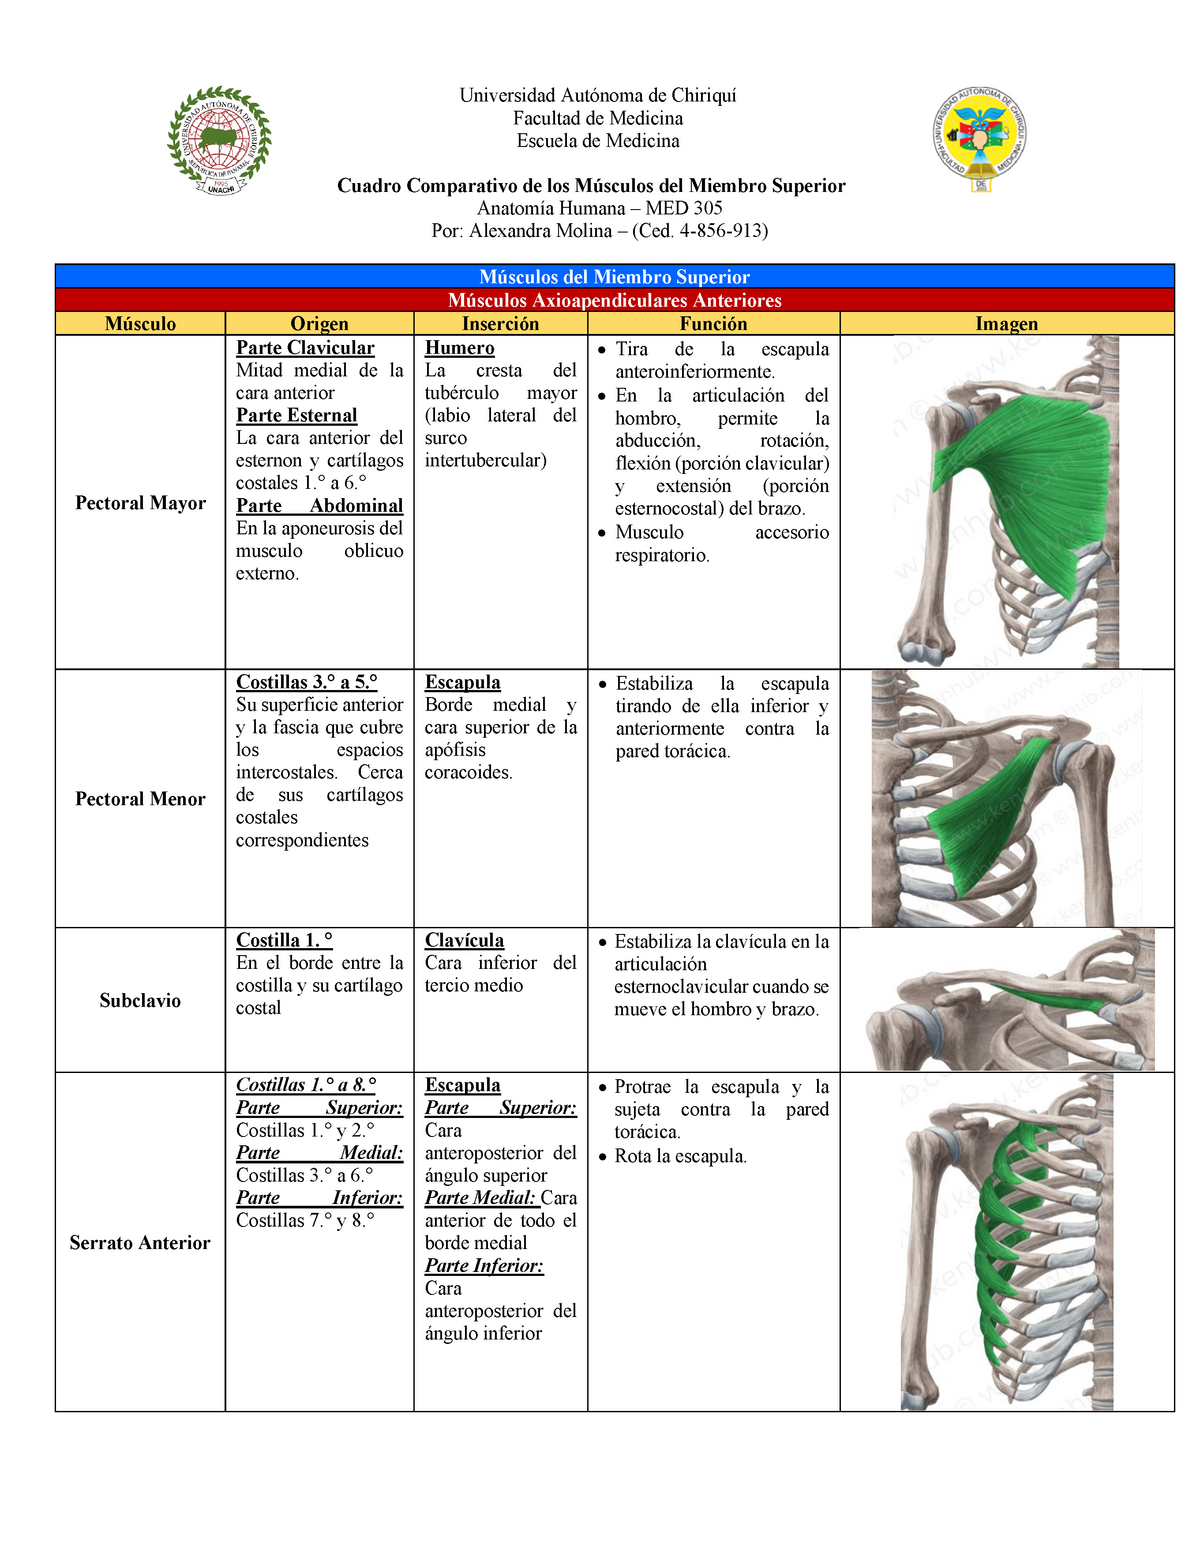 Cuadro De Los Orígenes Inserciones Y Funciones Del Los Músculos De Miembro Superior Warning 8611